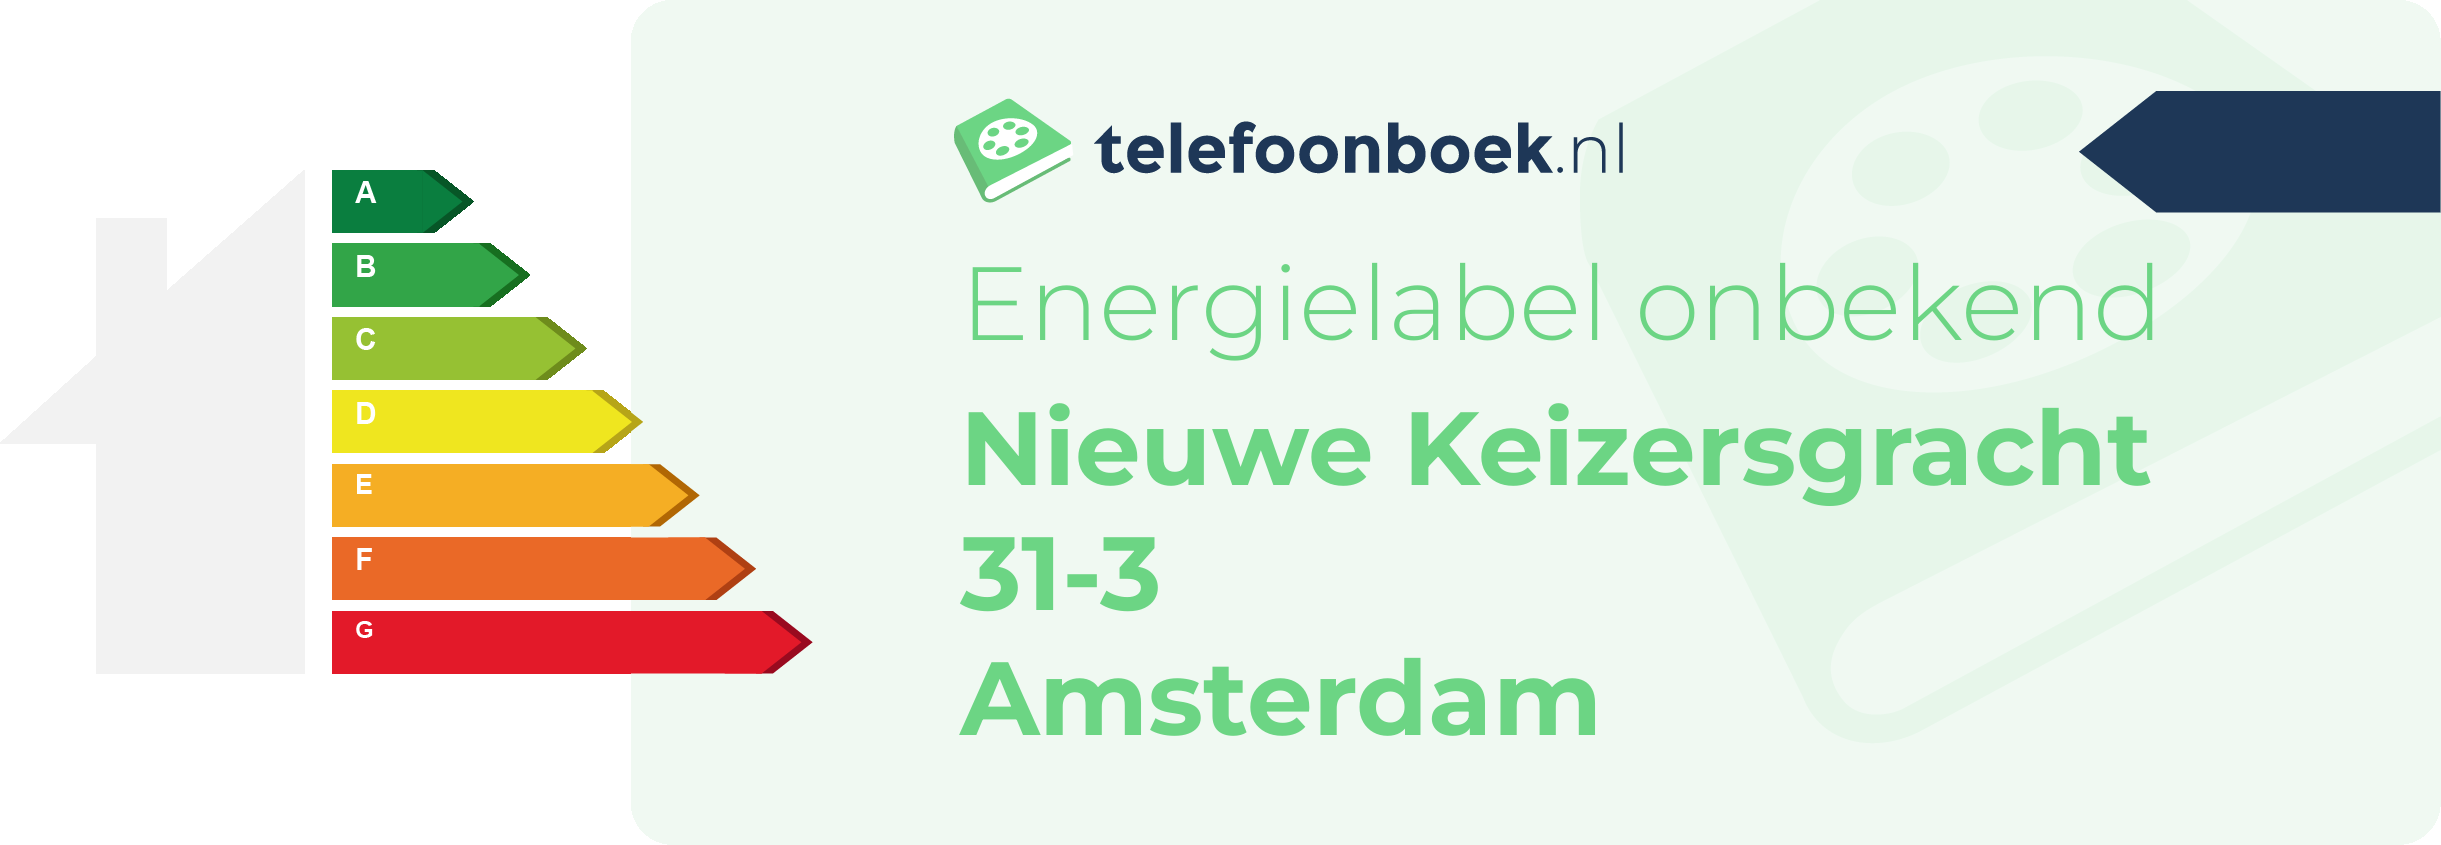 Energielabel Nieuwe Keizersgracht 31-3 Amsterdam